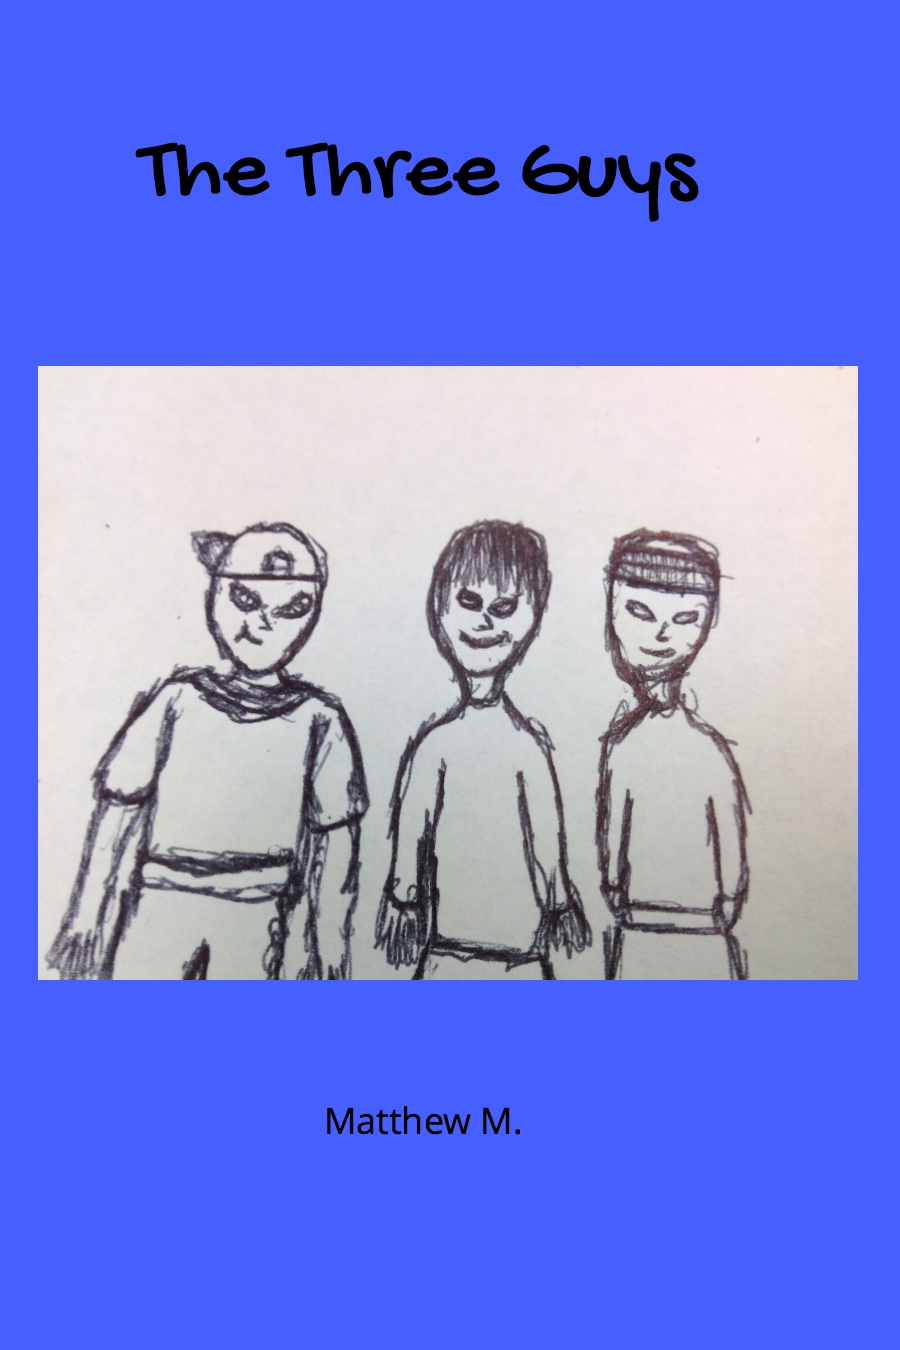 The Three Guys by Matthew M